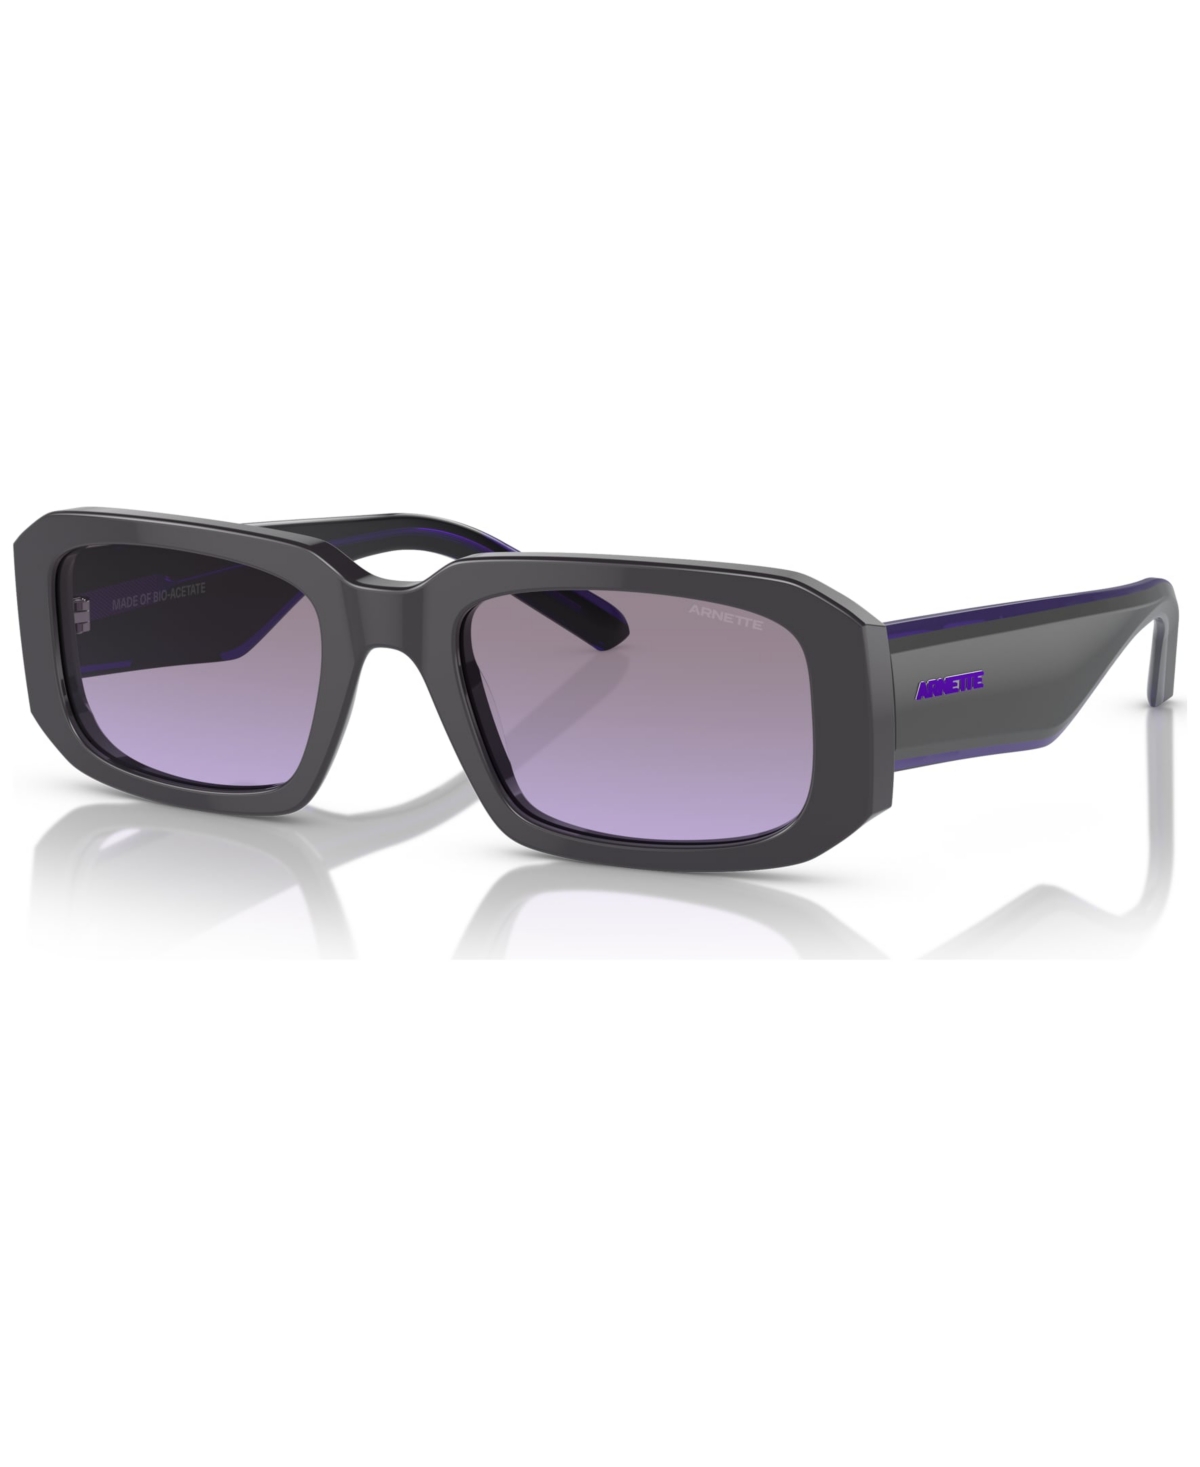 Men's Thekidd Sunglasses, AN431853-x 53 - Gray